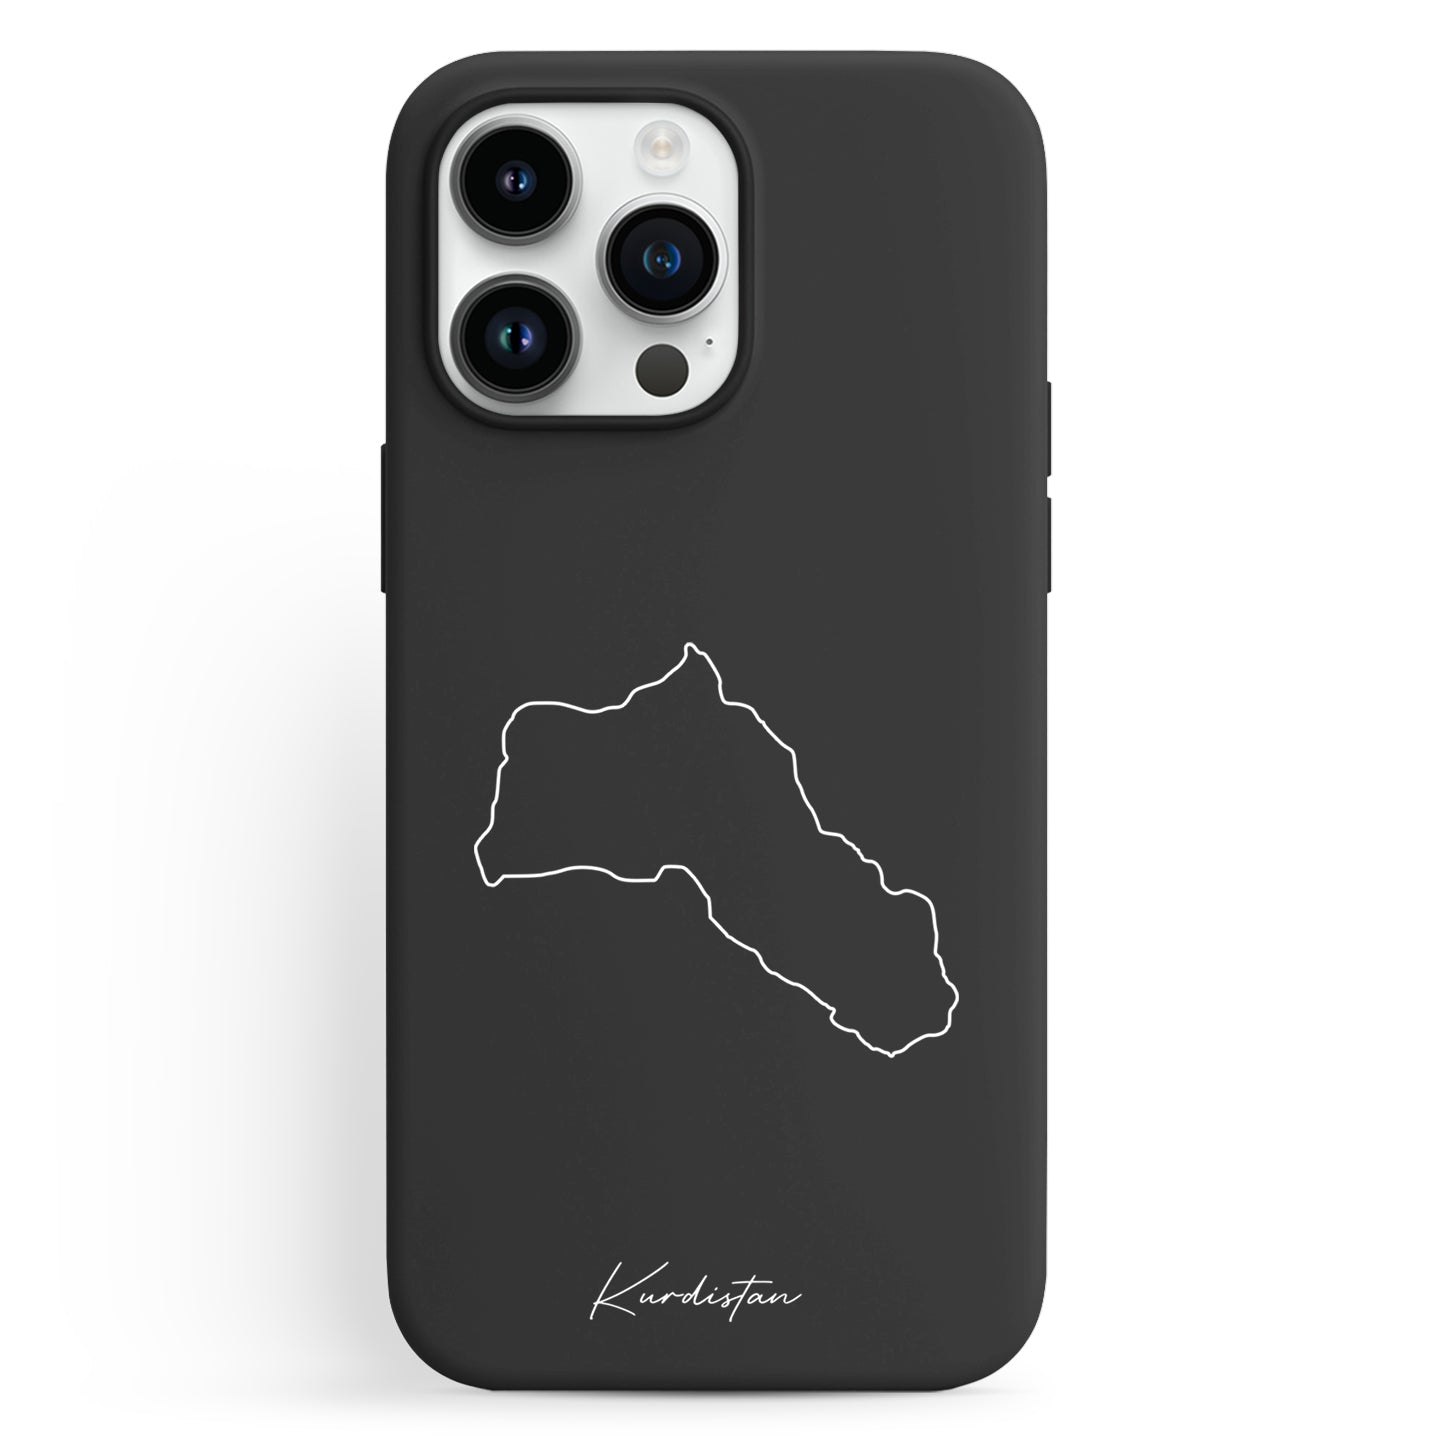 Handyhüllen mit Landkarte - Kurdistan - 1instaphone